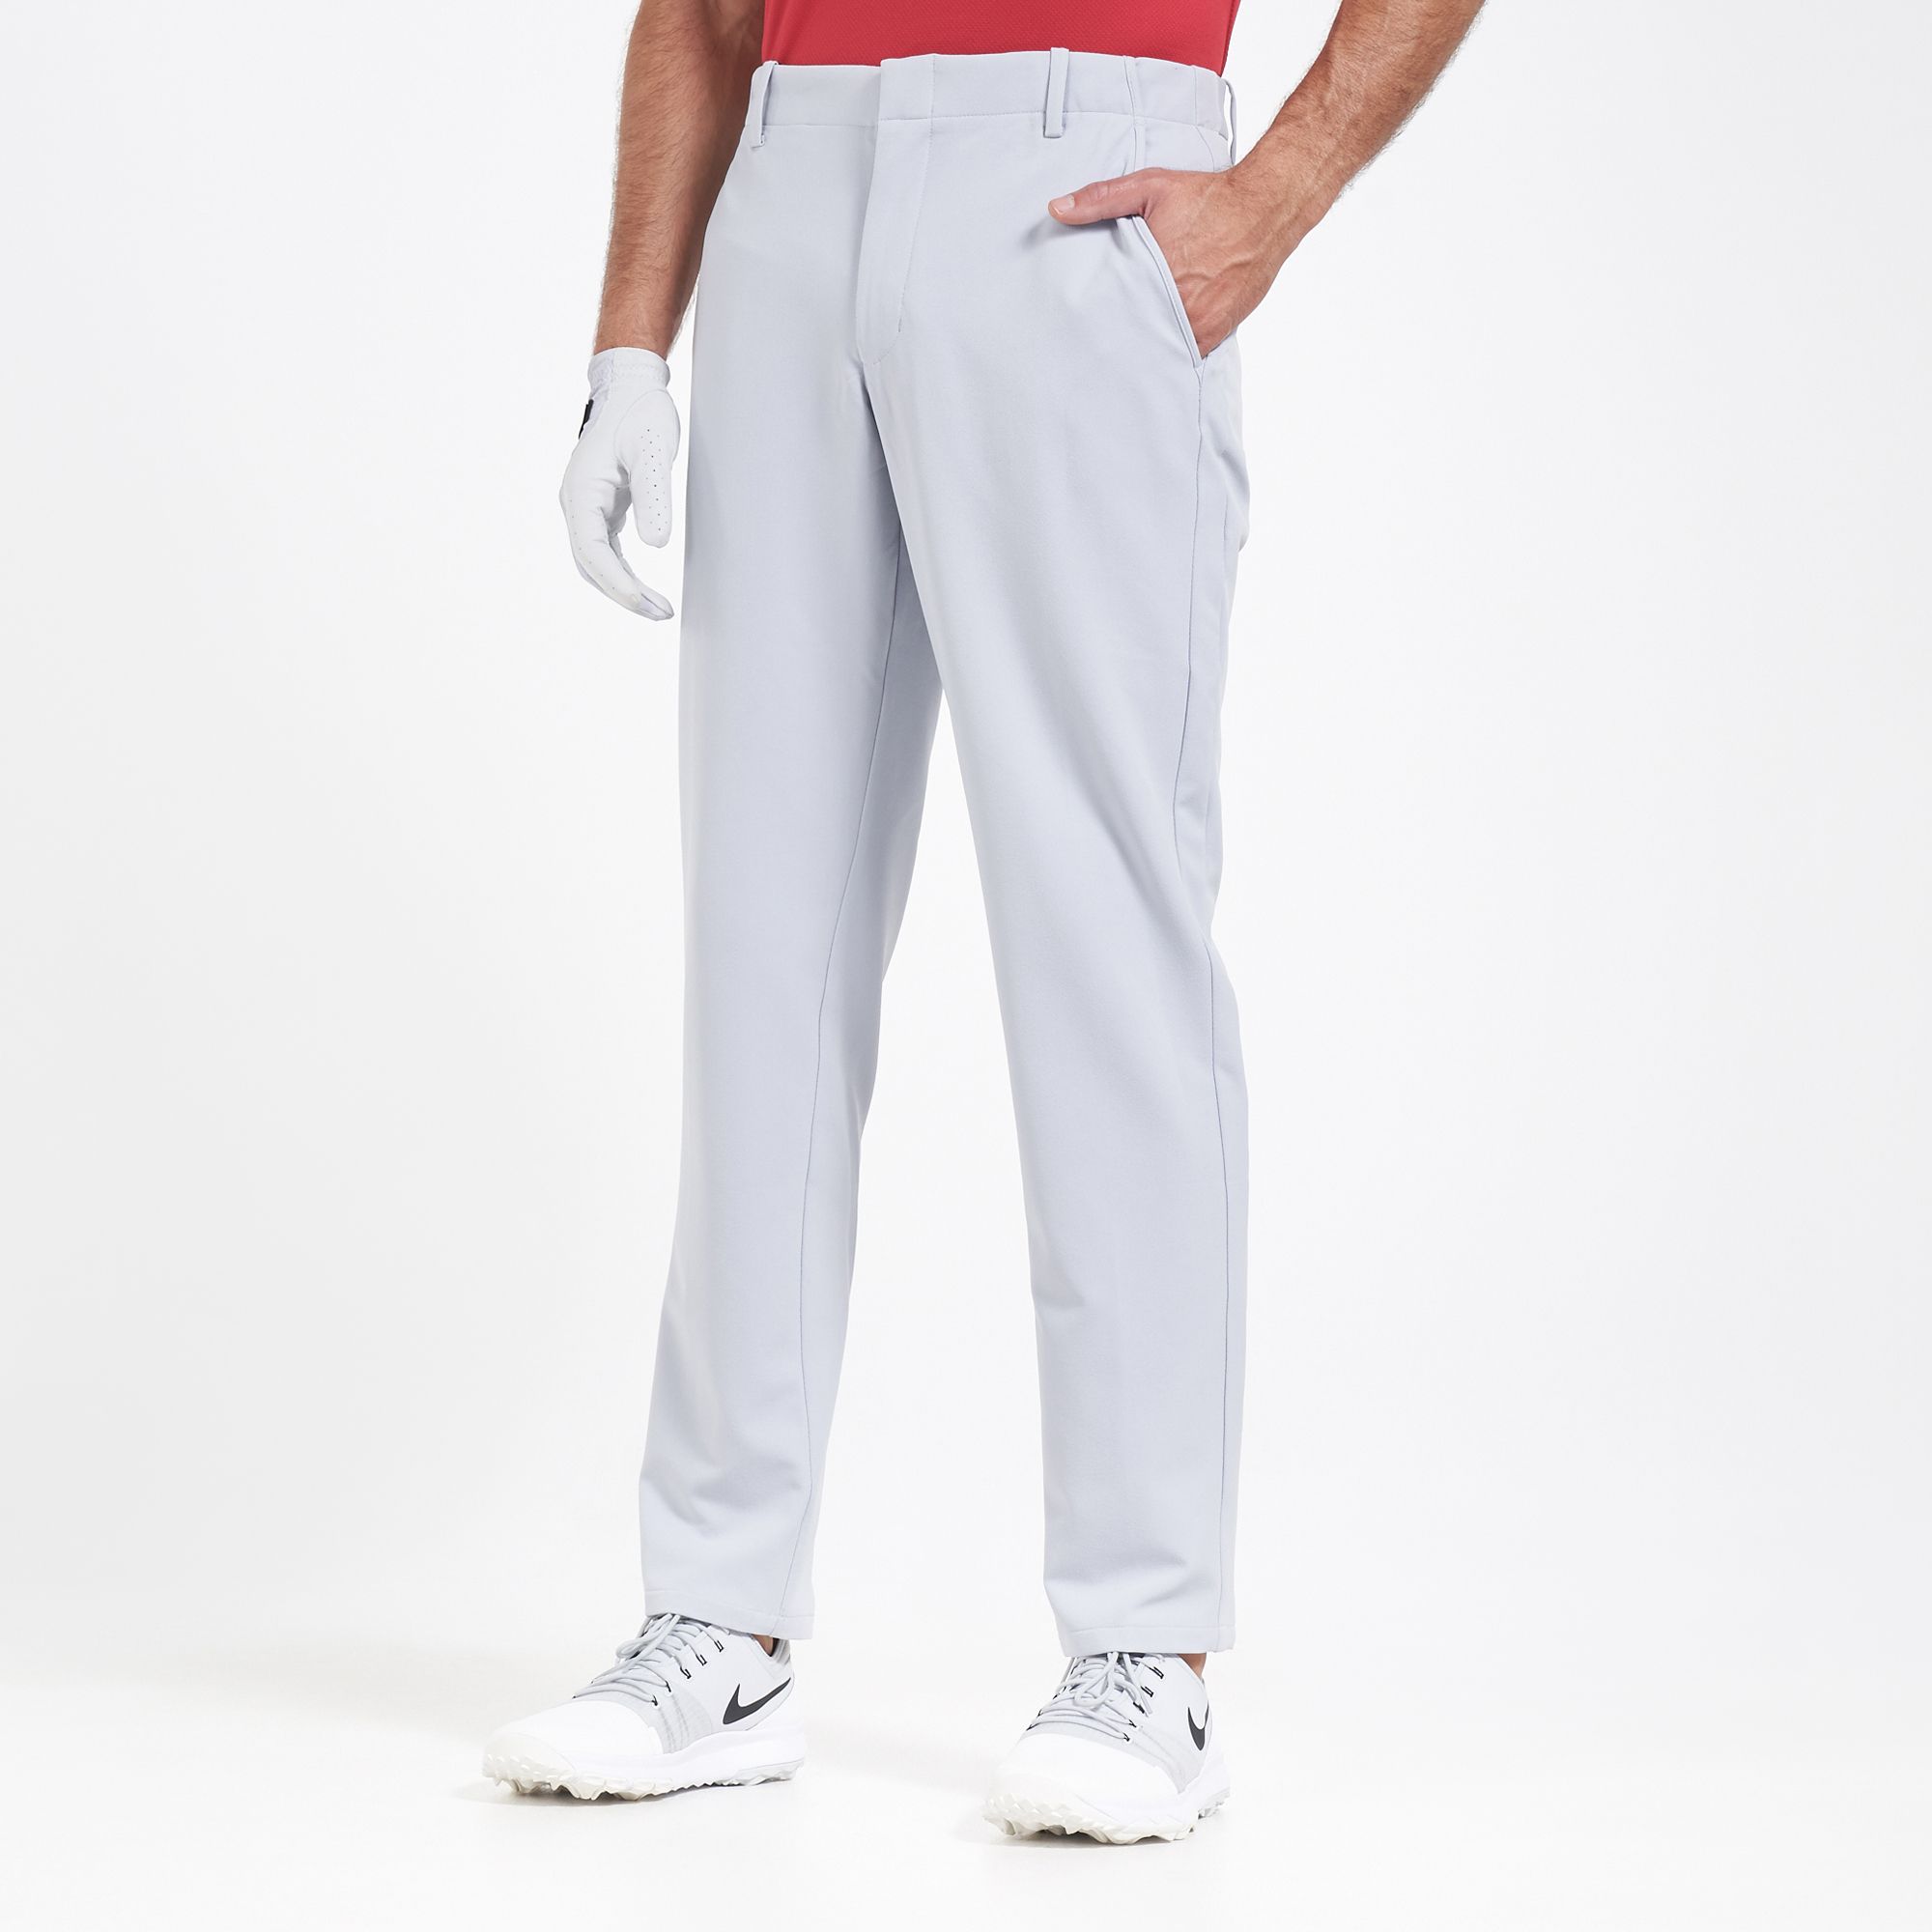 Nike Golf Men's Flex Vapor Slim Fit Pants | Pants | Clothing | Men's ...